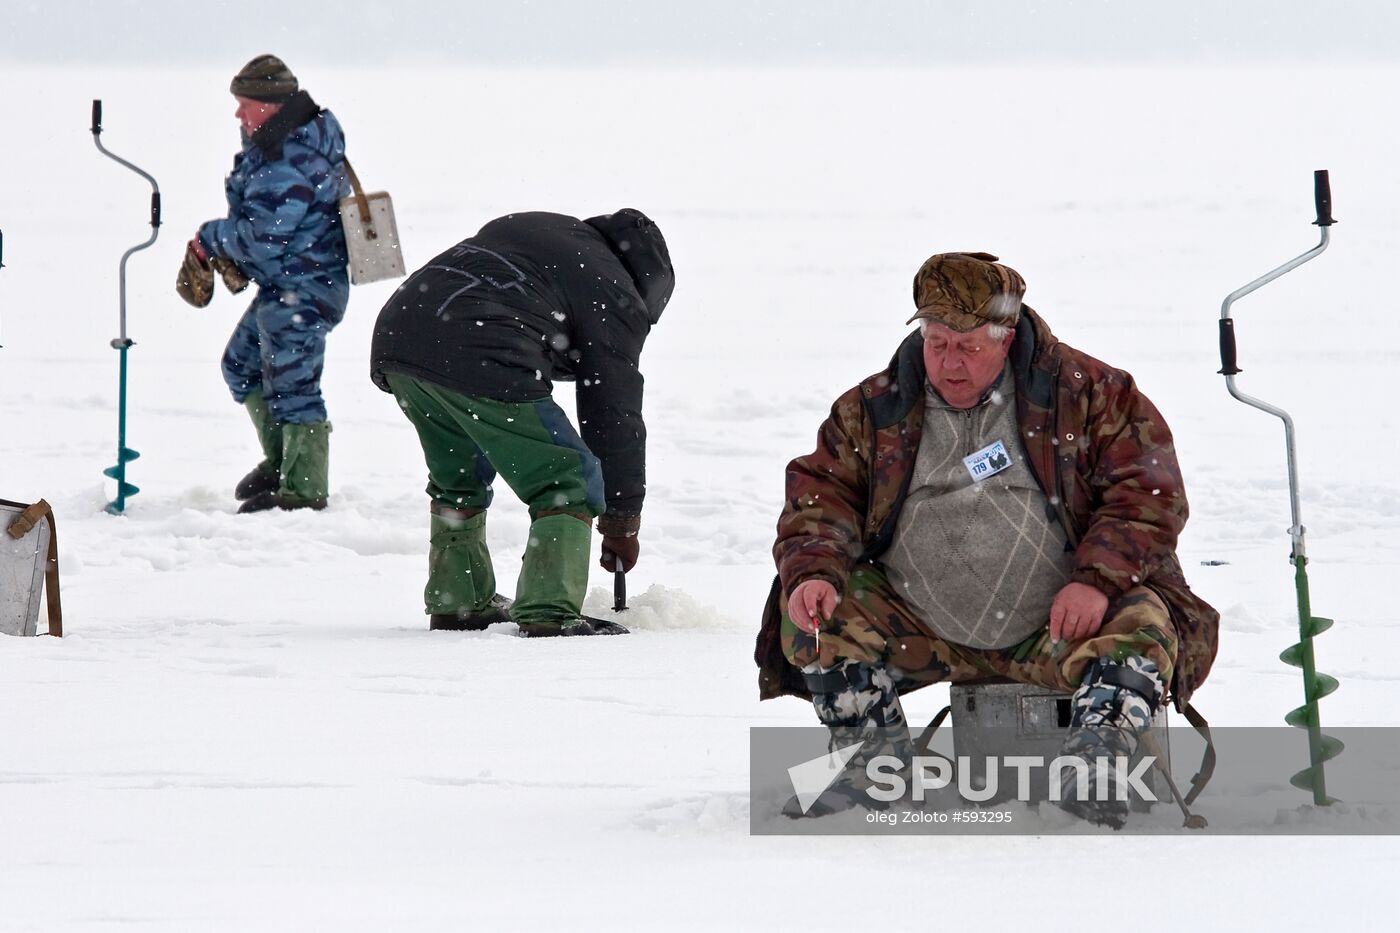 Ice fishery fans